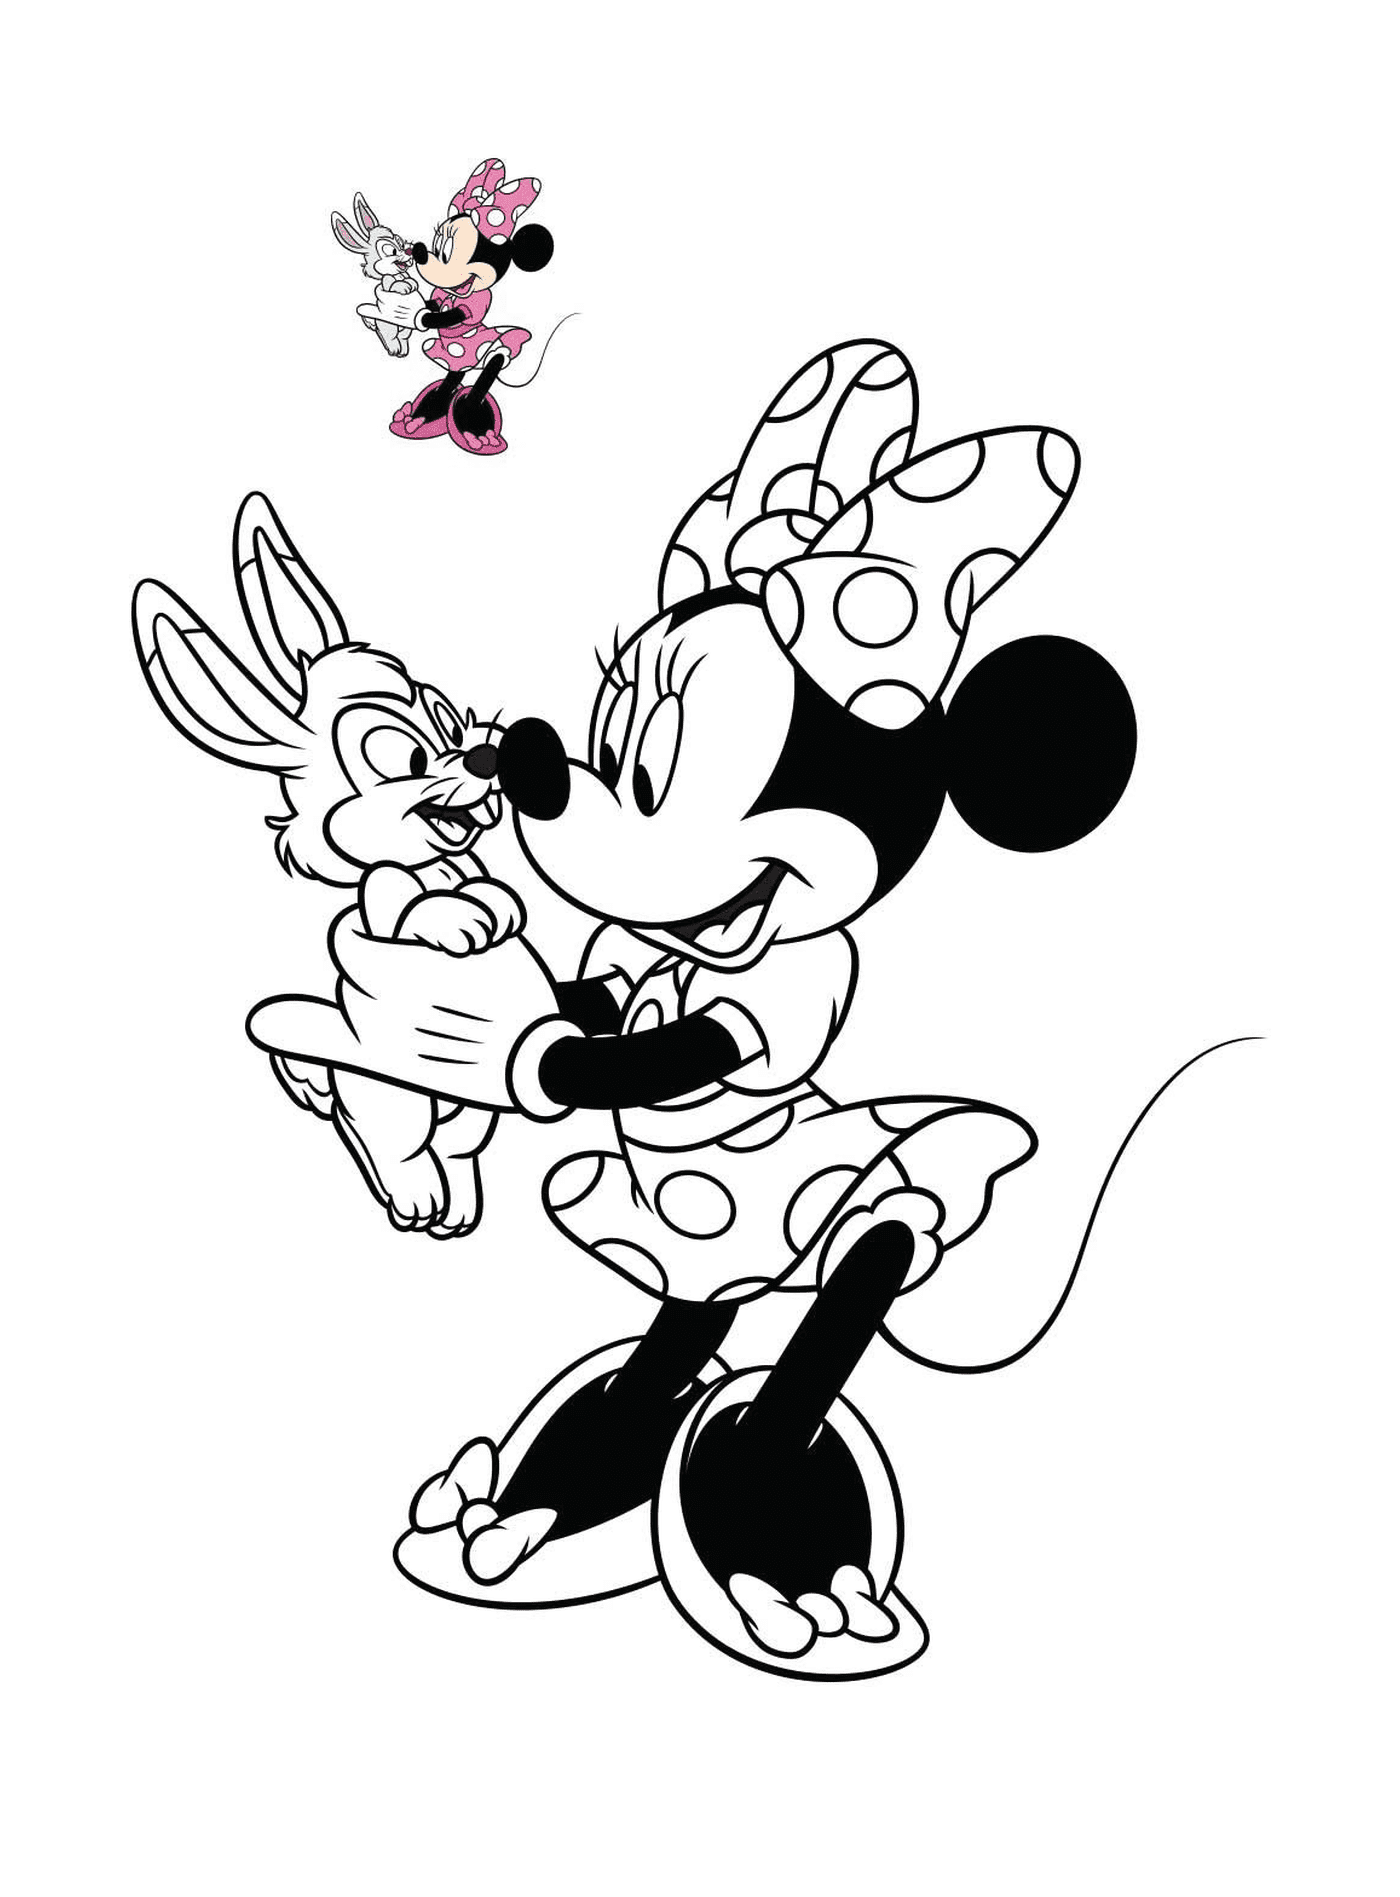   Minnie Mouse tient un lapin dans ses mains 